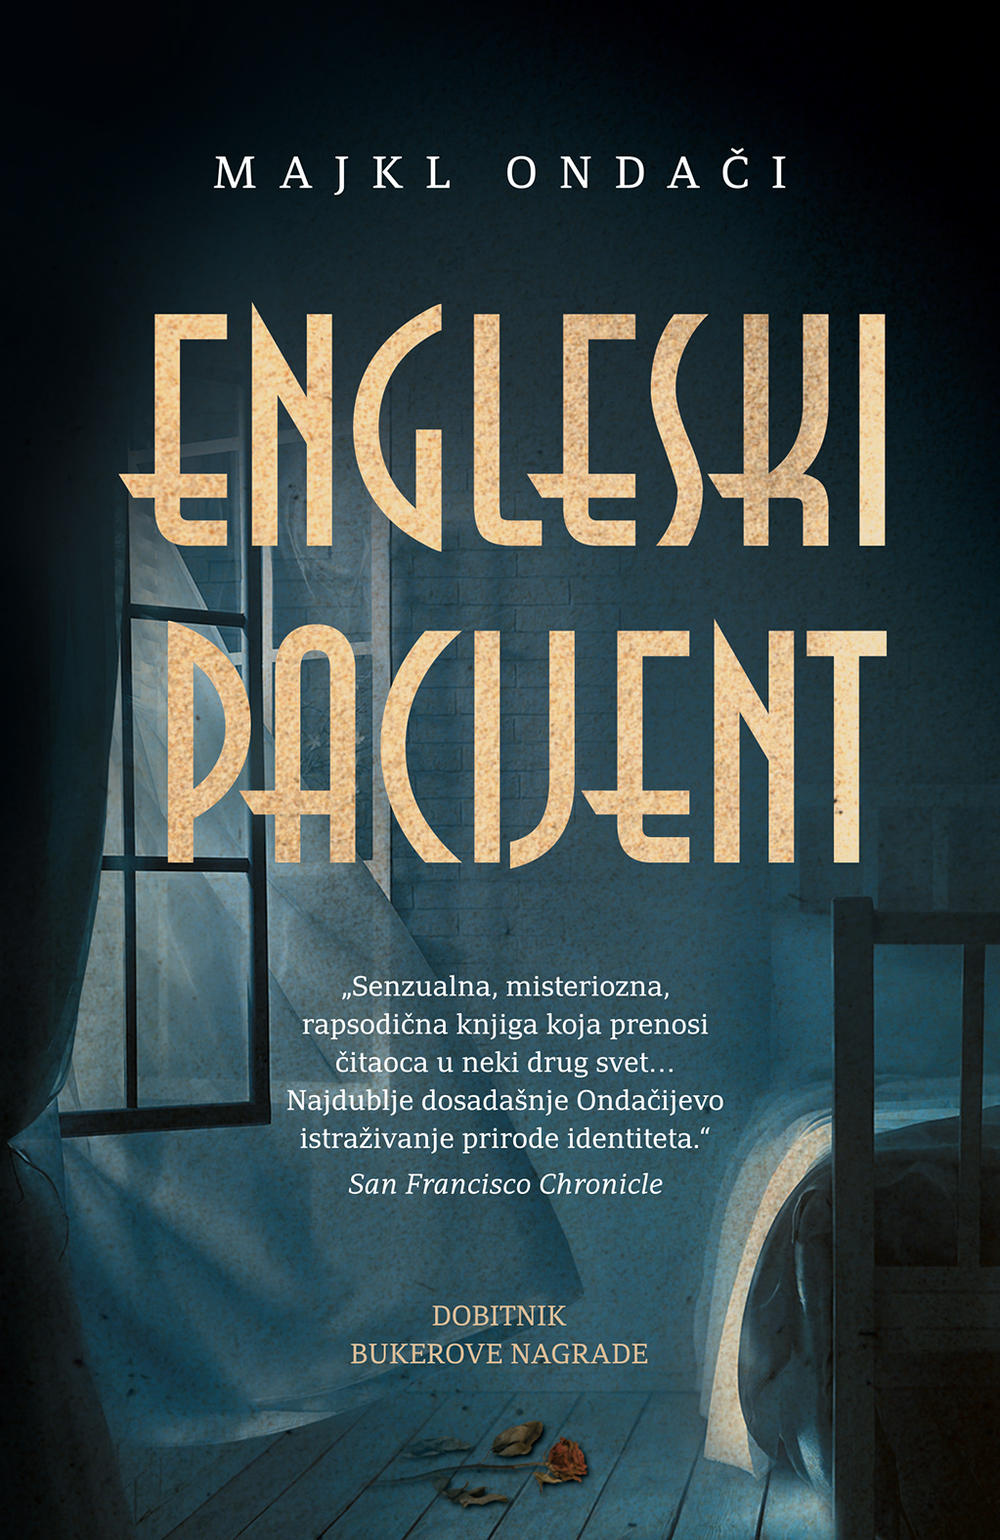 Knjiga 'Engleski pacijent